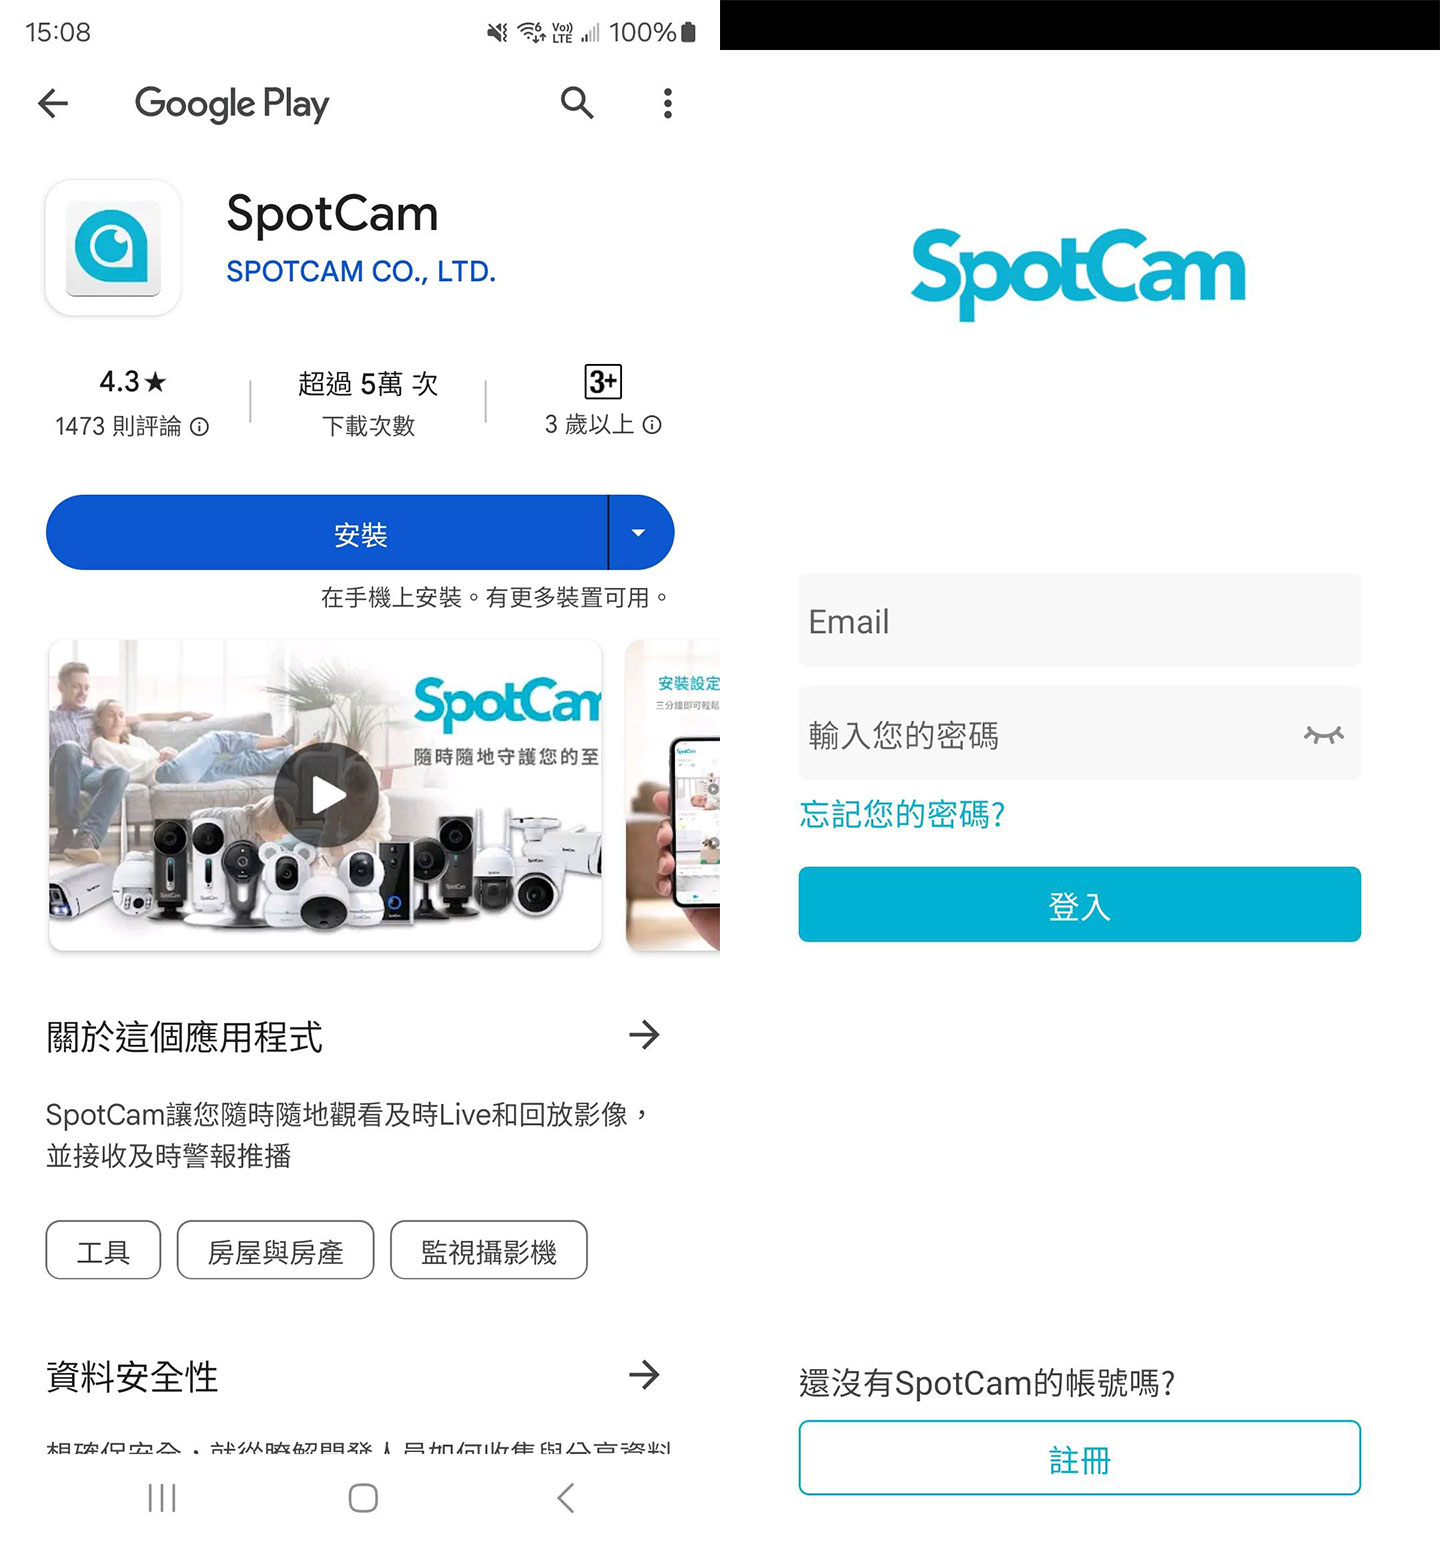 在手機端安裝 SpotCam App，啟動後可免費註冊 SpotCam 帳號並登入。